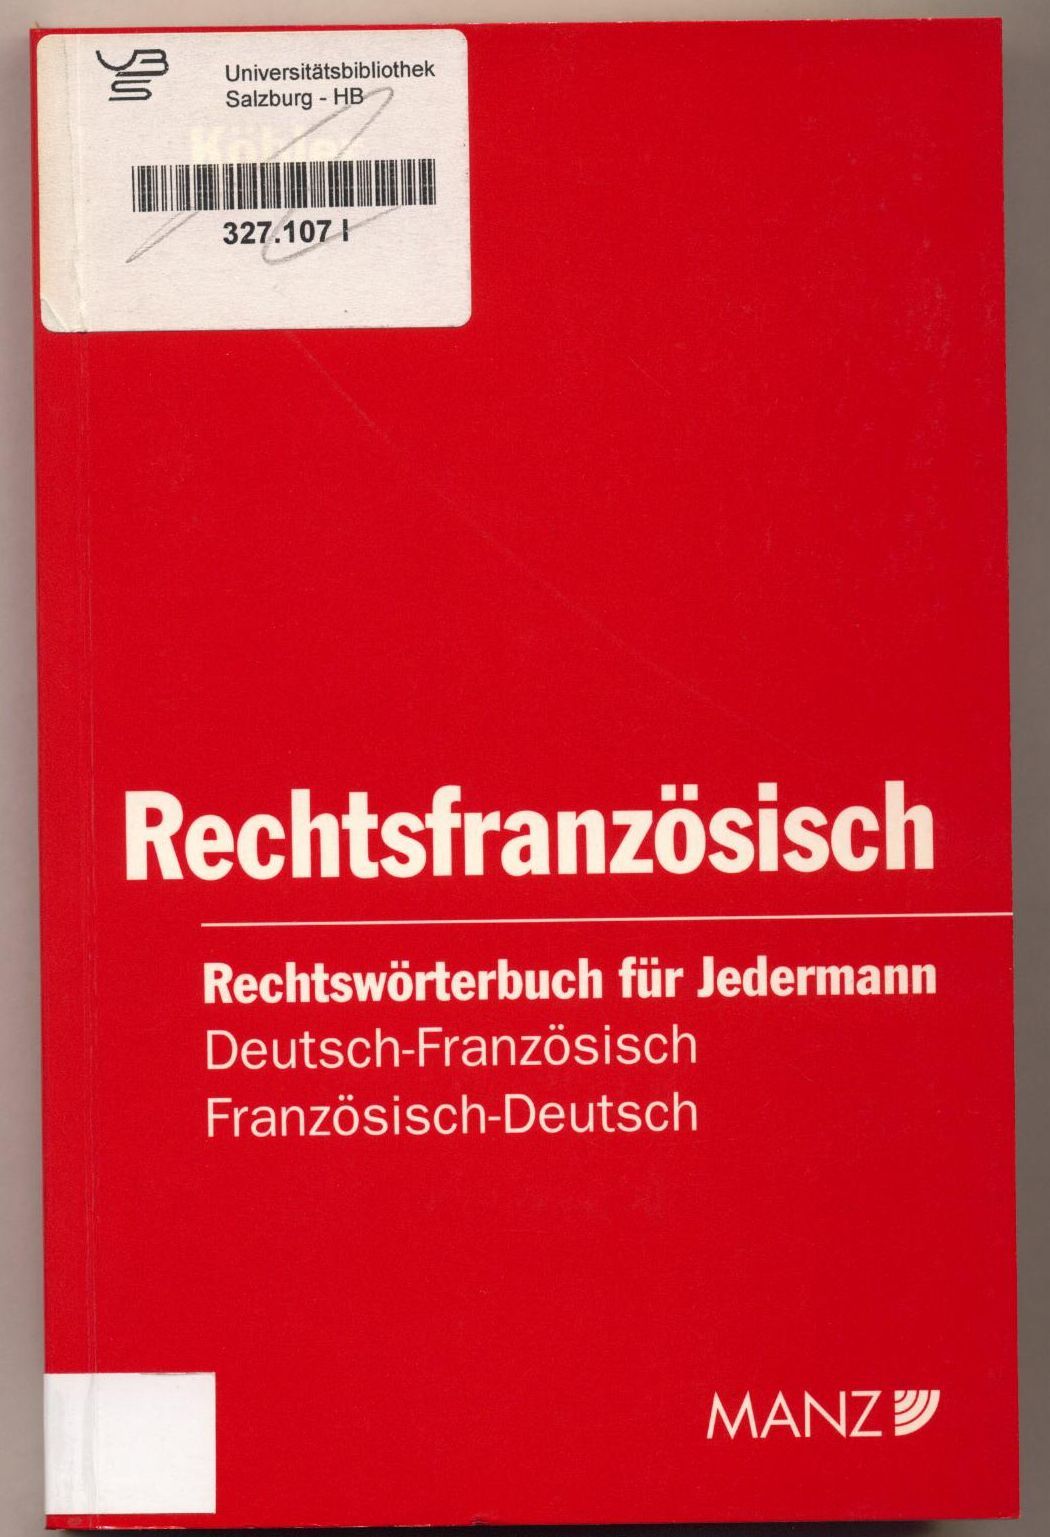 Rechtsfranzösisch Deutsch-französisches und französisch-deutsches Rechtswörterbuch für jedermann - Köbler, Gerhard und Peter Winkler